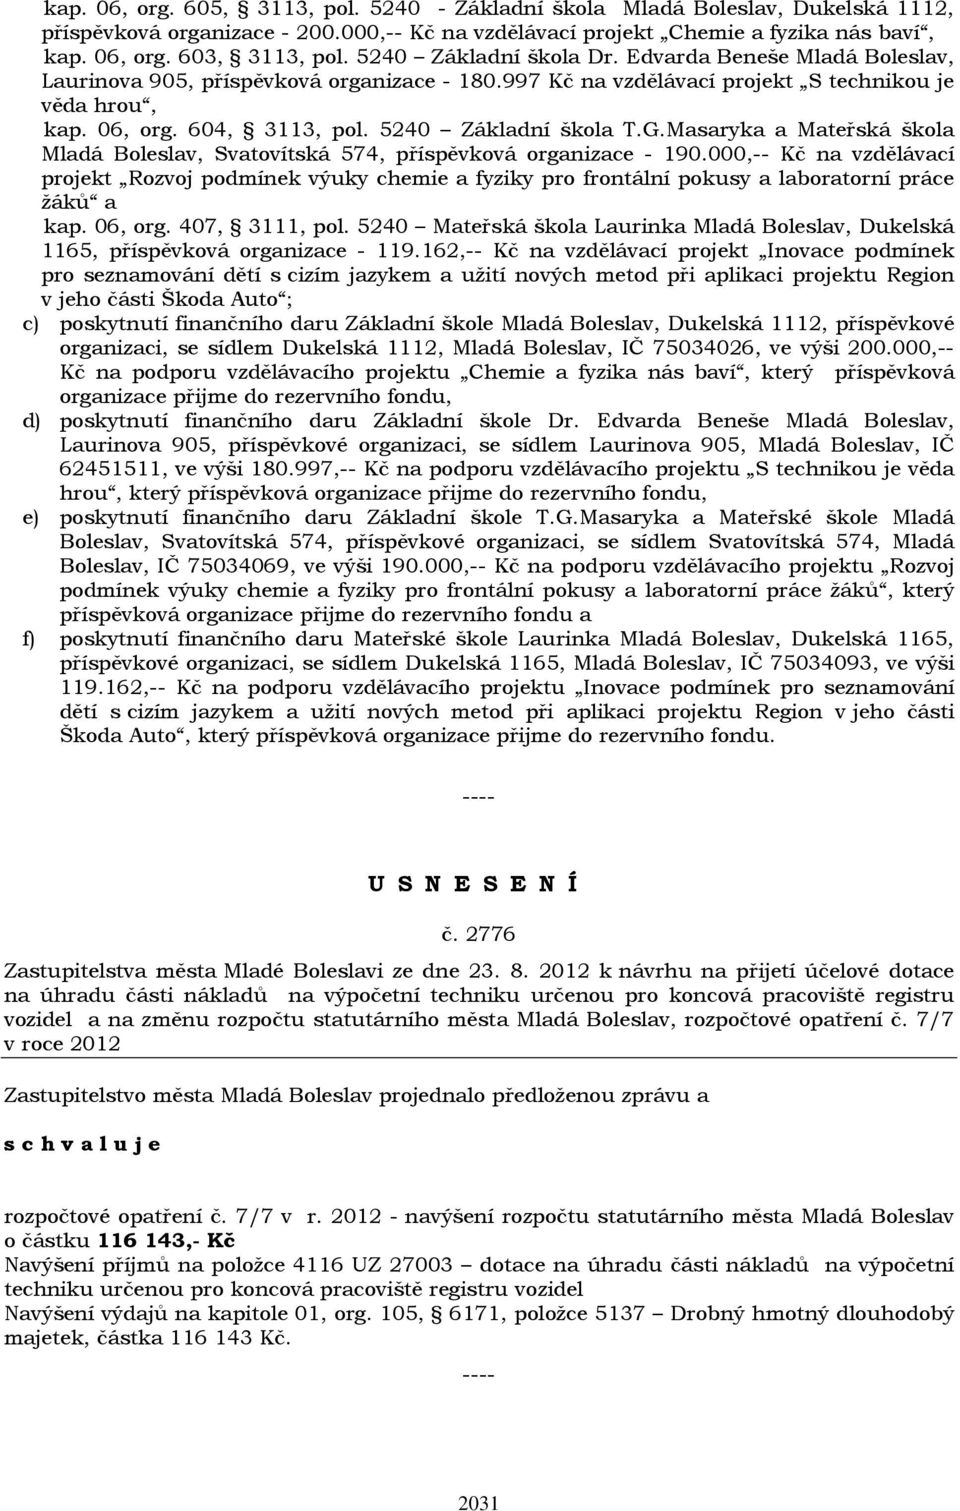 5240 Základní škola T.G.Masaryka a Mateřská škola Mladá Boleslav, Svatovítská 574, příspěvková organizace - 190.